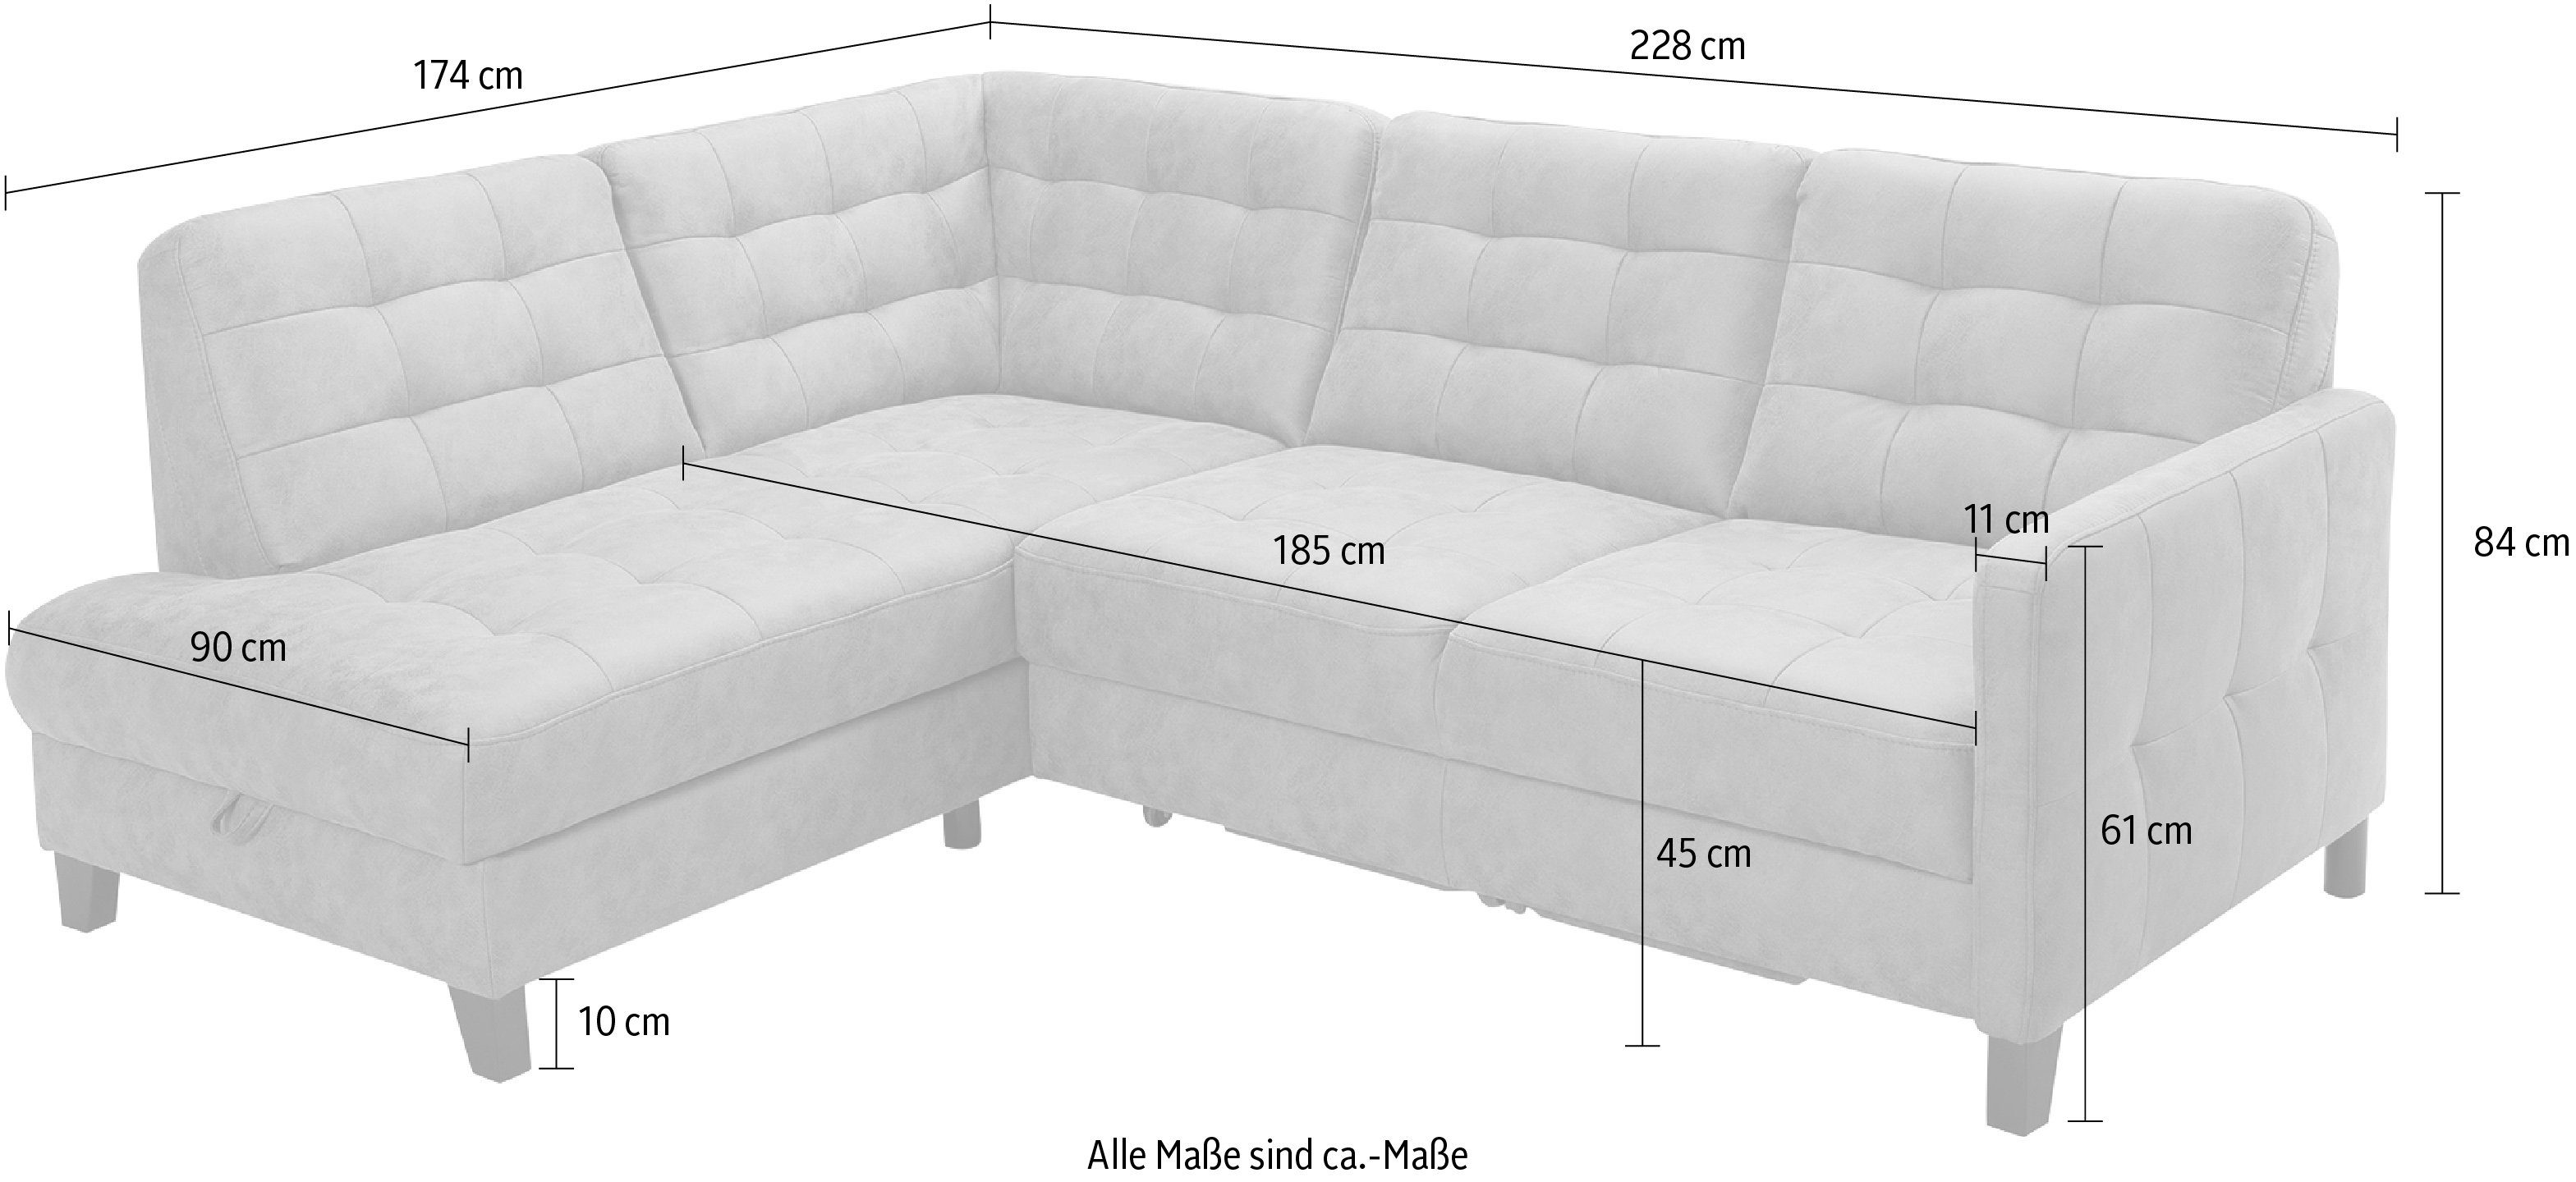 Ecksofa exxpo fashion und vielen sofa wahlweise mit Bettkasten, Bettfunktion - Elio, Bezugsqualitäten in